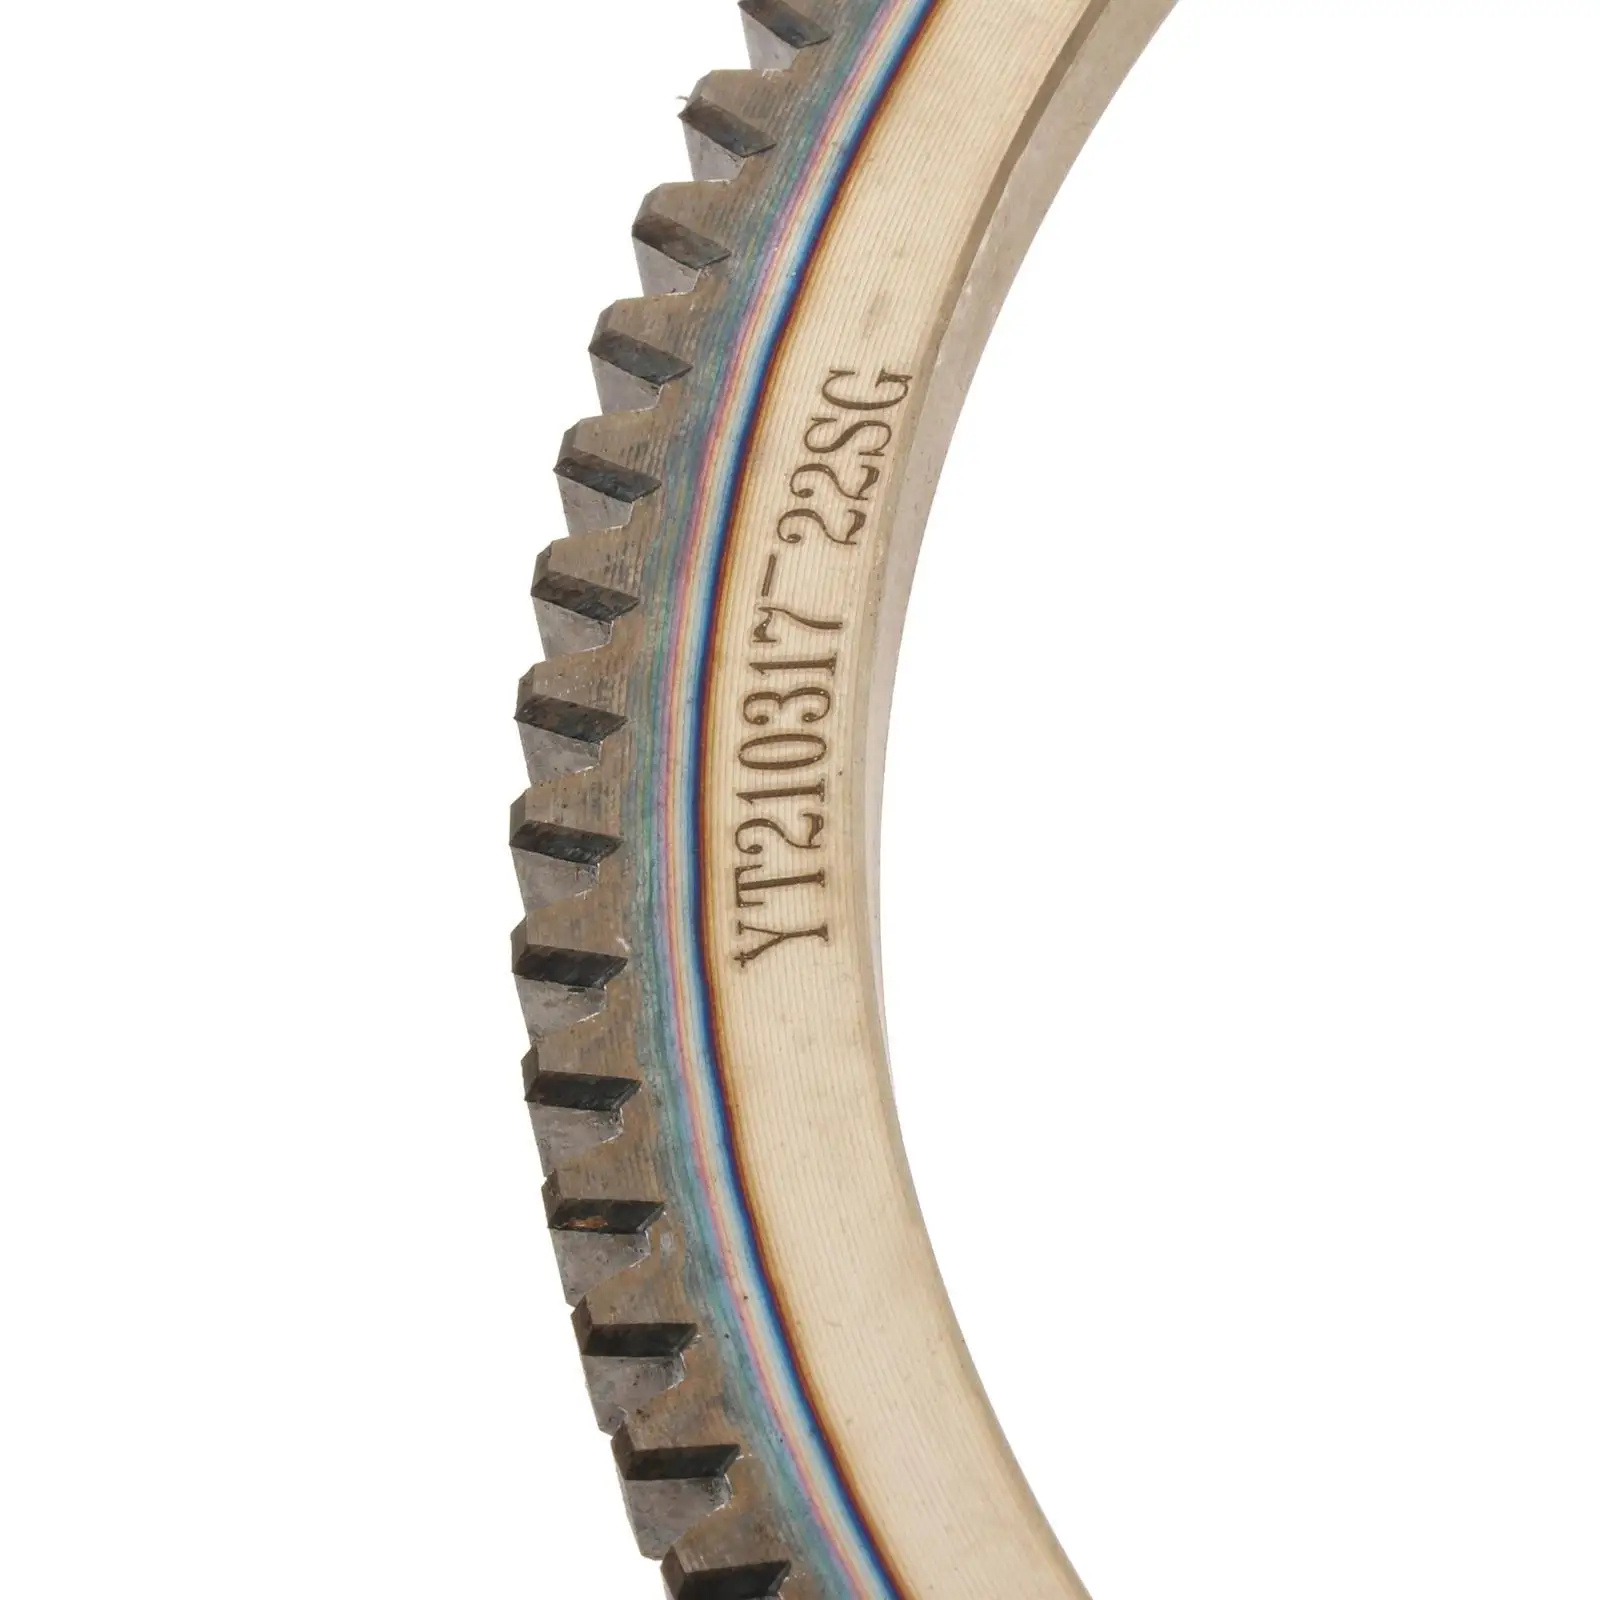 Зубчатые кольца из легированной стали для подвесного мотора Parsun 2T 9,8-18 л.с. - 5